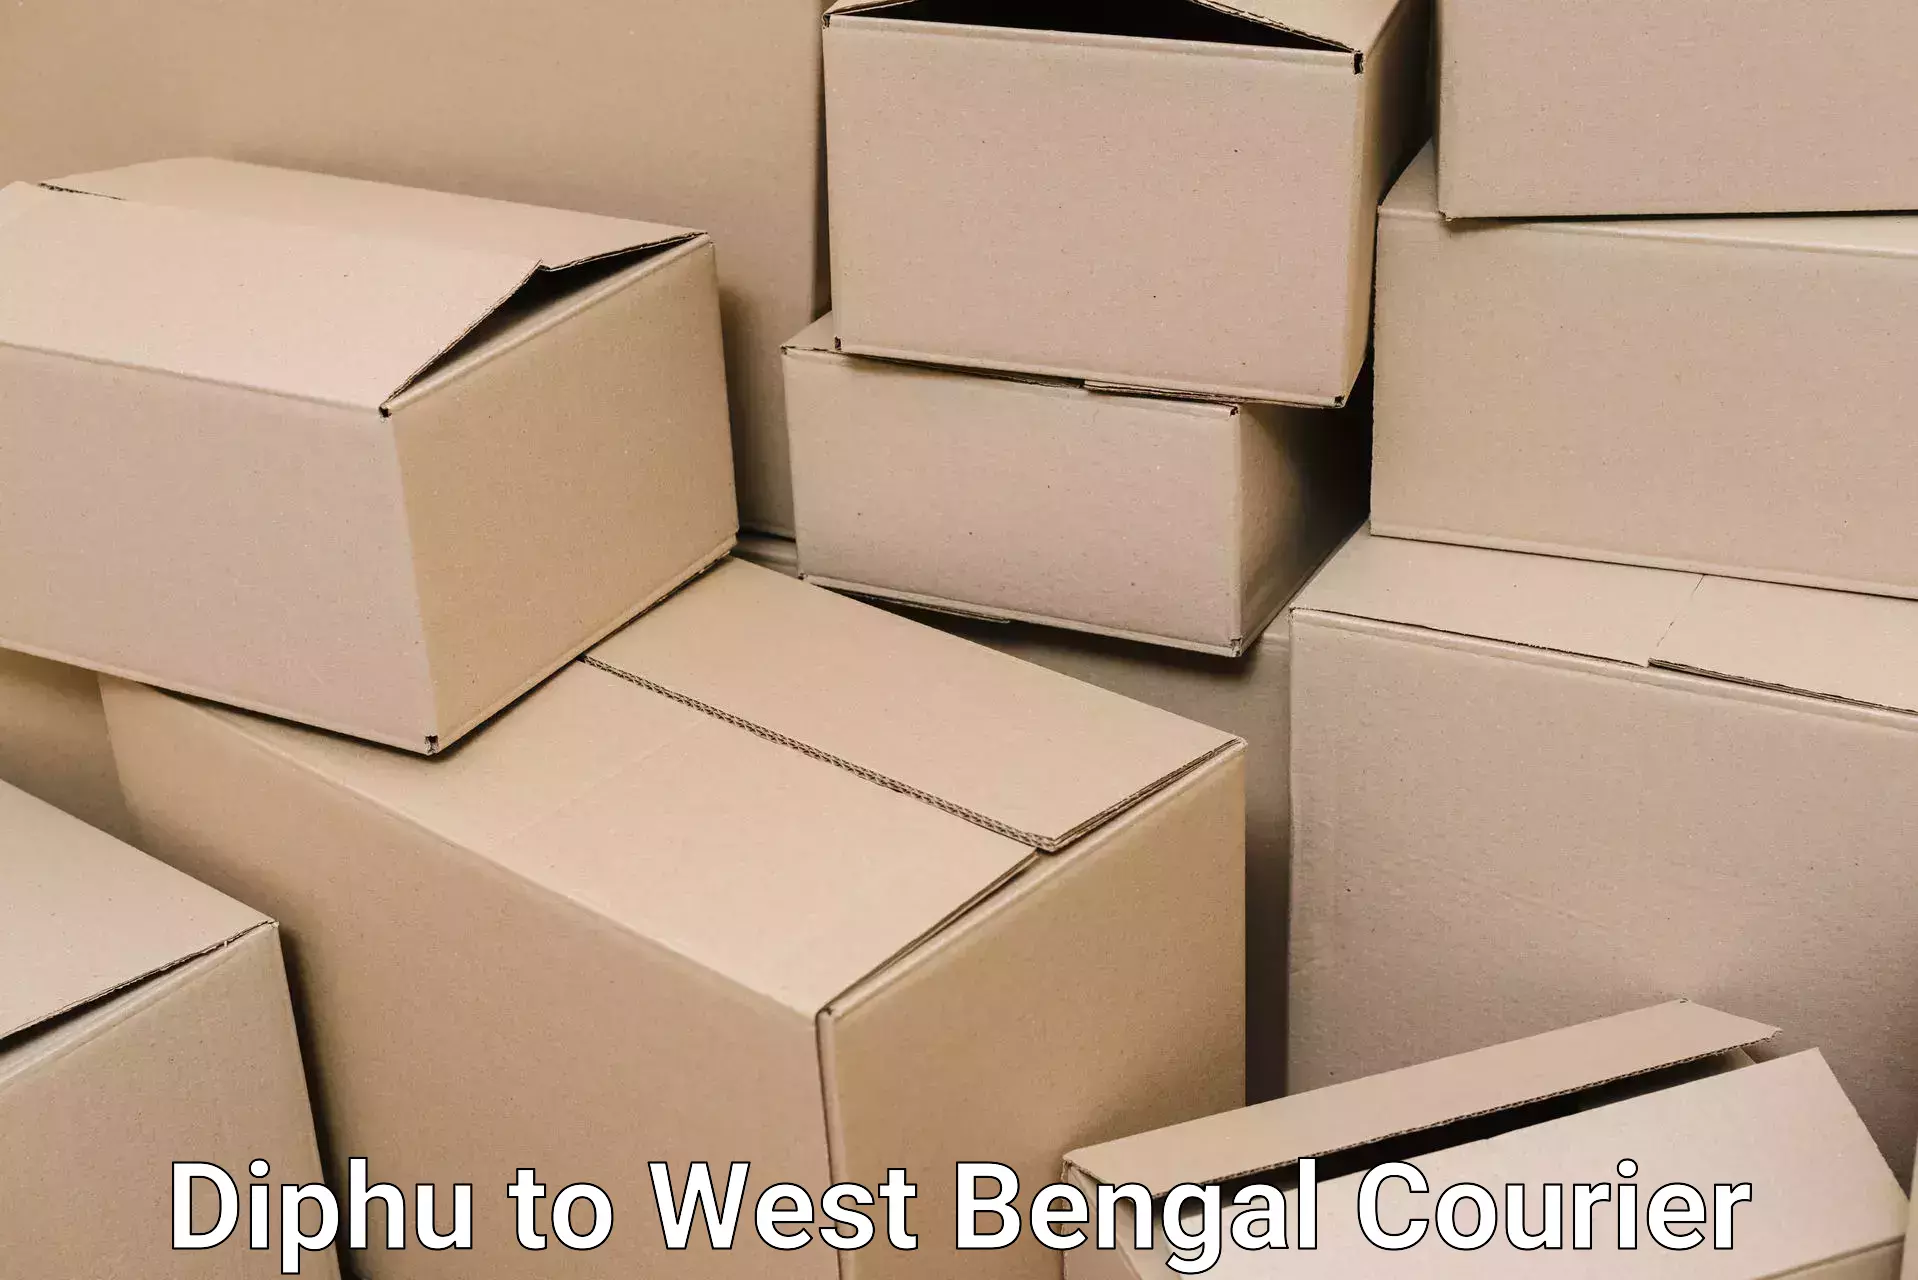 Moving and packing experts Diphu to Swarupnagar